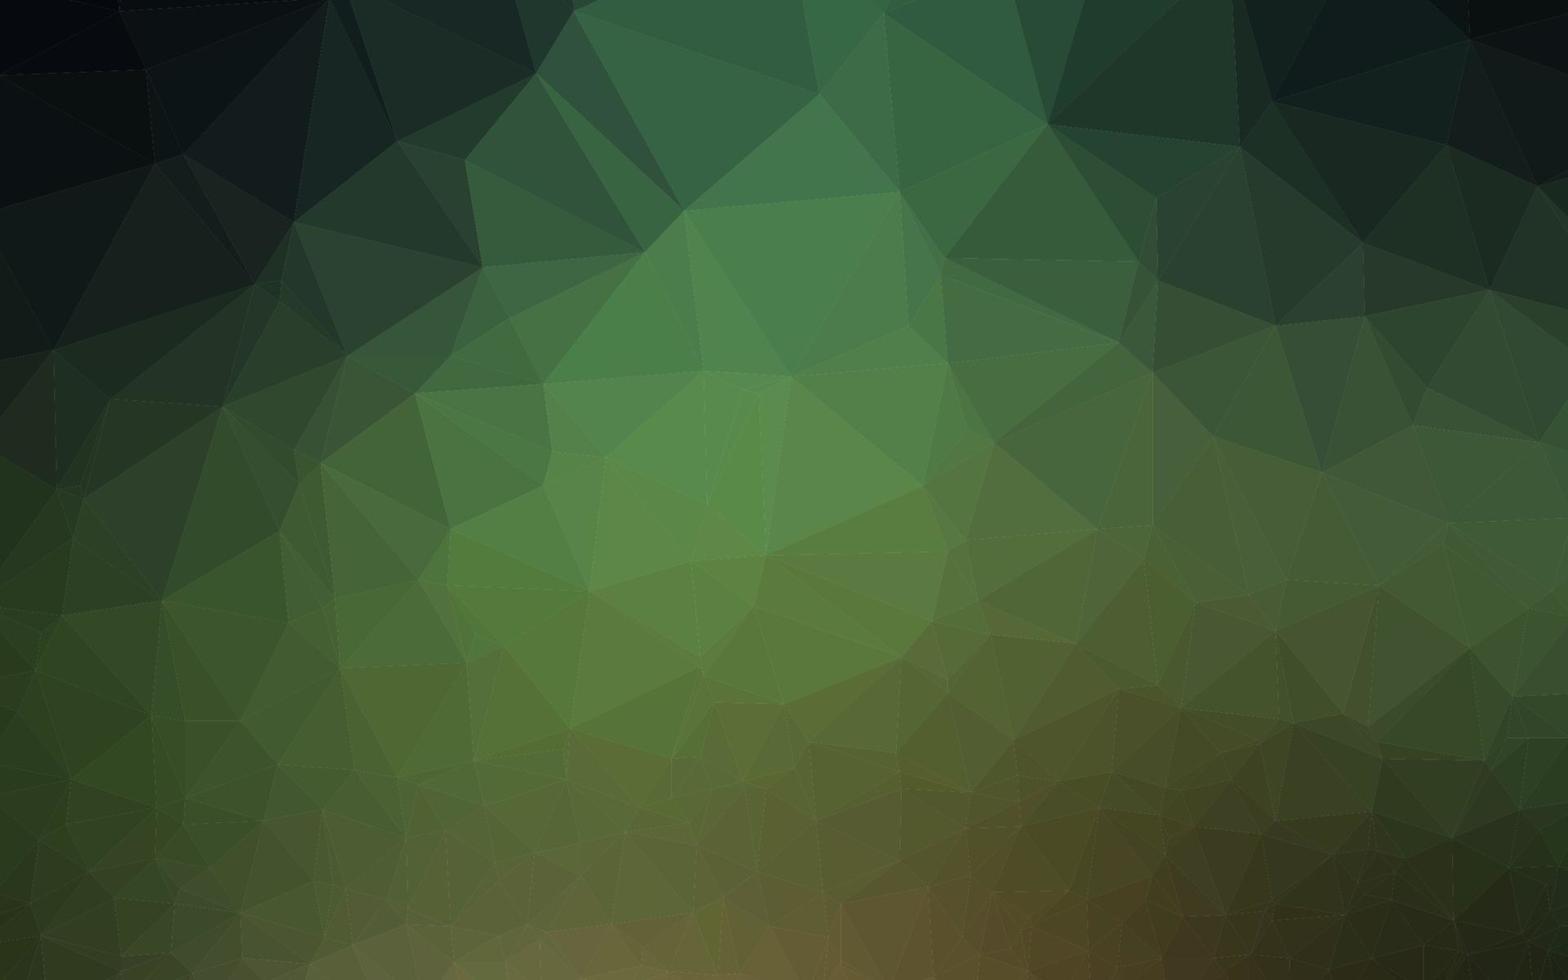 couverture de mosaïque de triangle de vecteur vert foncé.